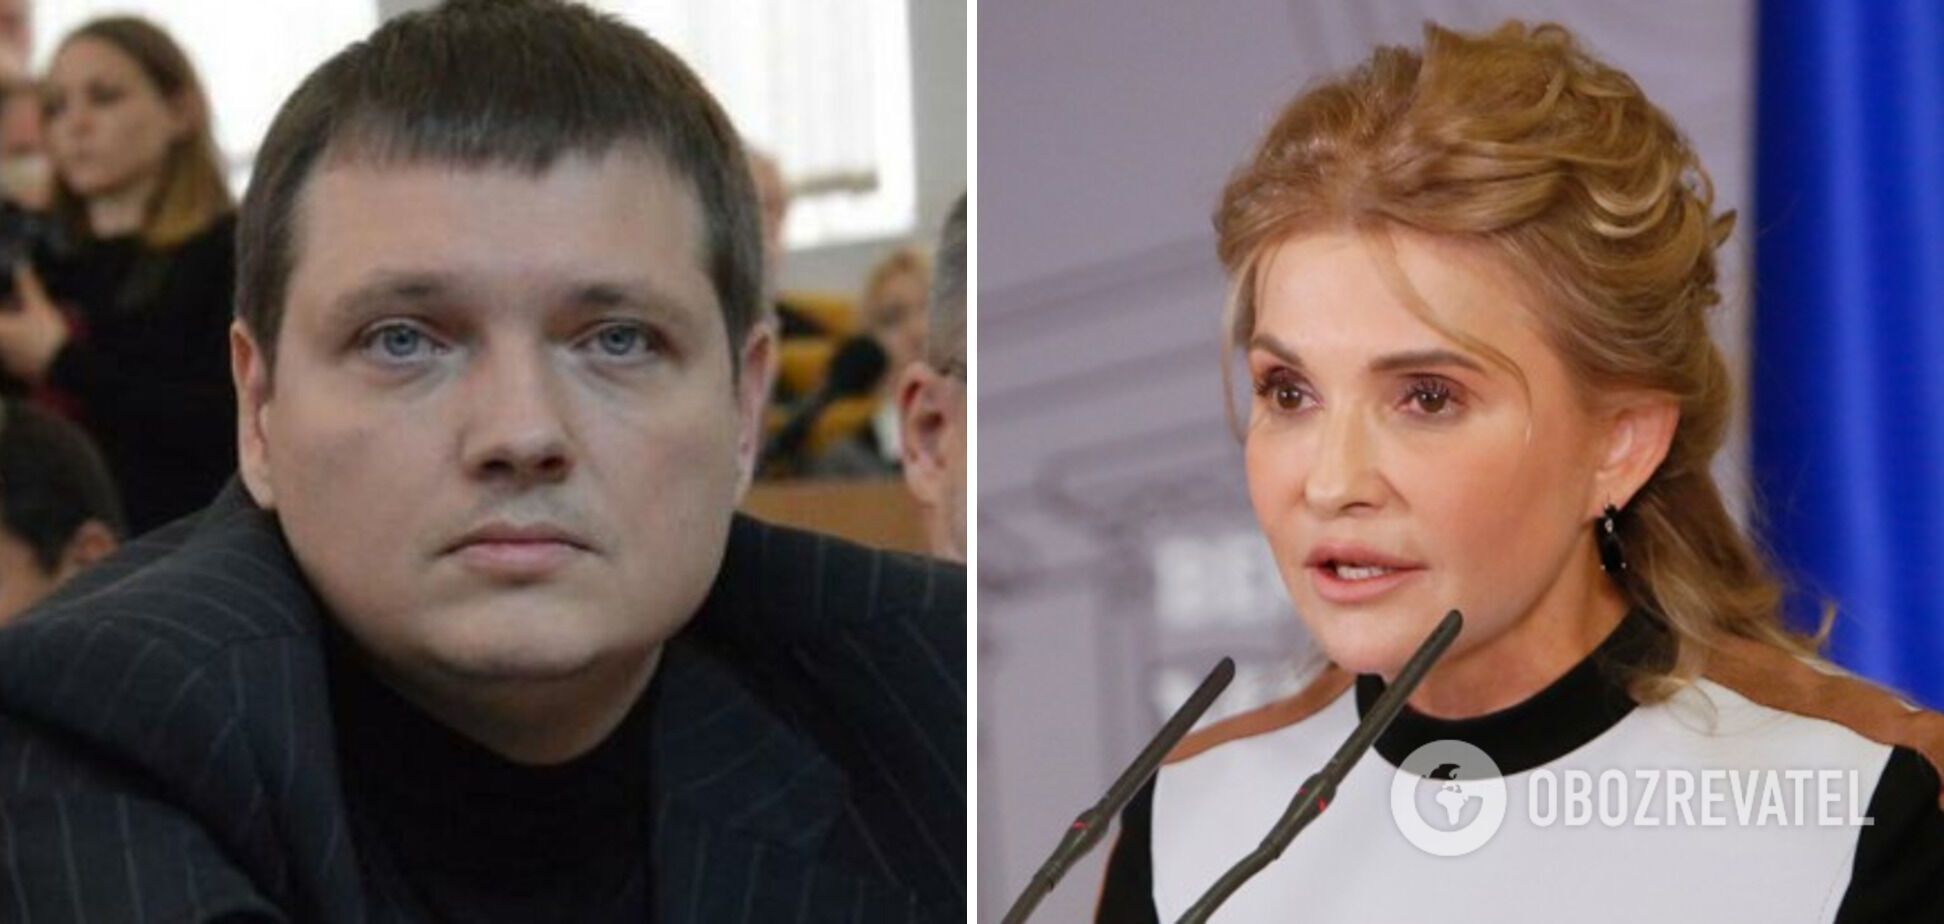 Аферист афериста бачить здалеку: як скандал із топменеджером може вбити політичне майбутнє Тимошенко